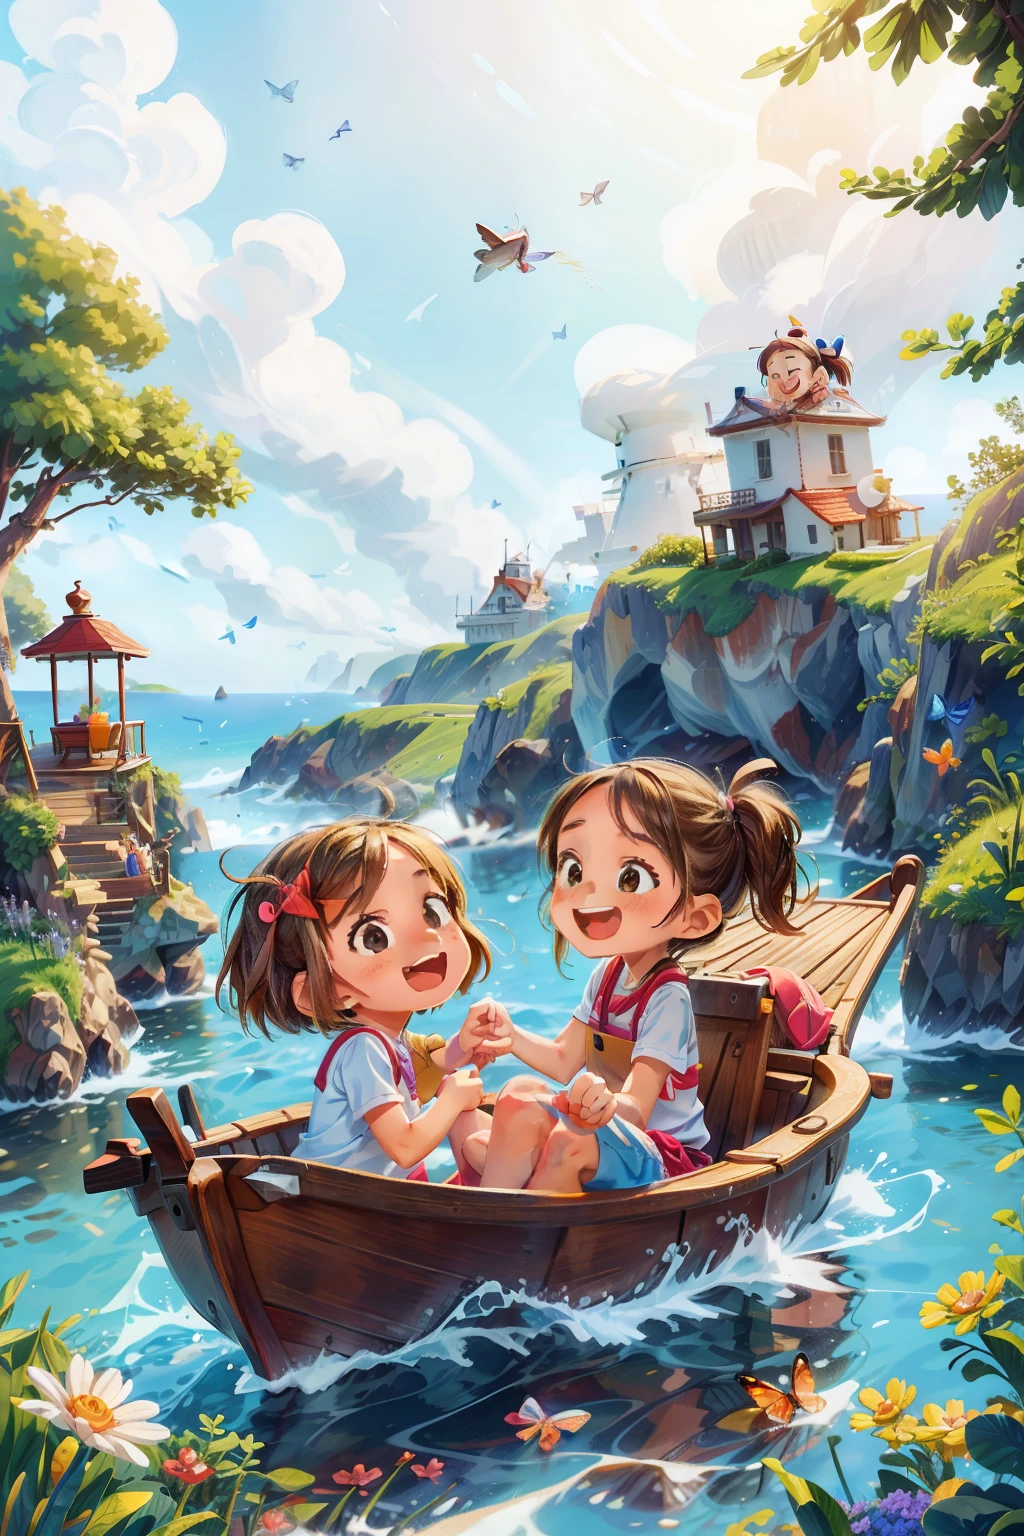 生成两个快乐的年轻女孩乘船航行的图像, 波浪, 海, 天空和白云. 色彩斑斓的蝴蝶, 背景中的灯塔,